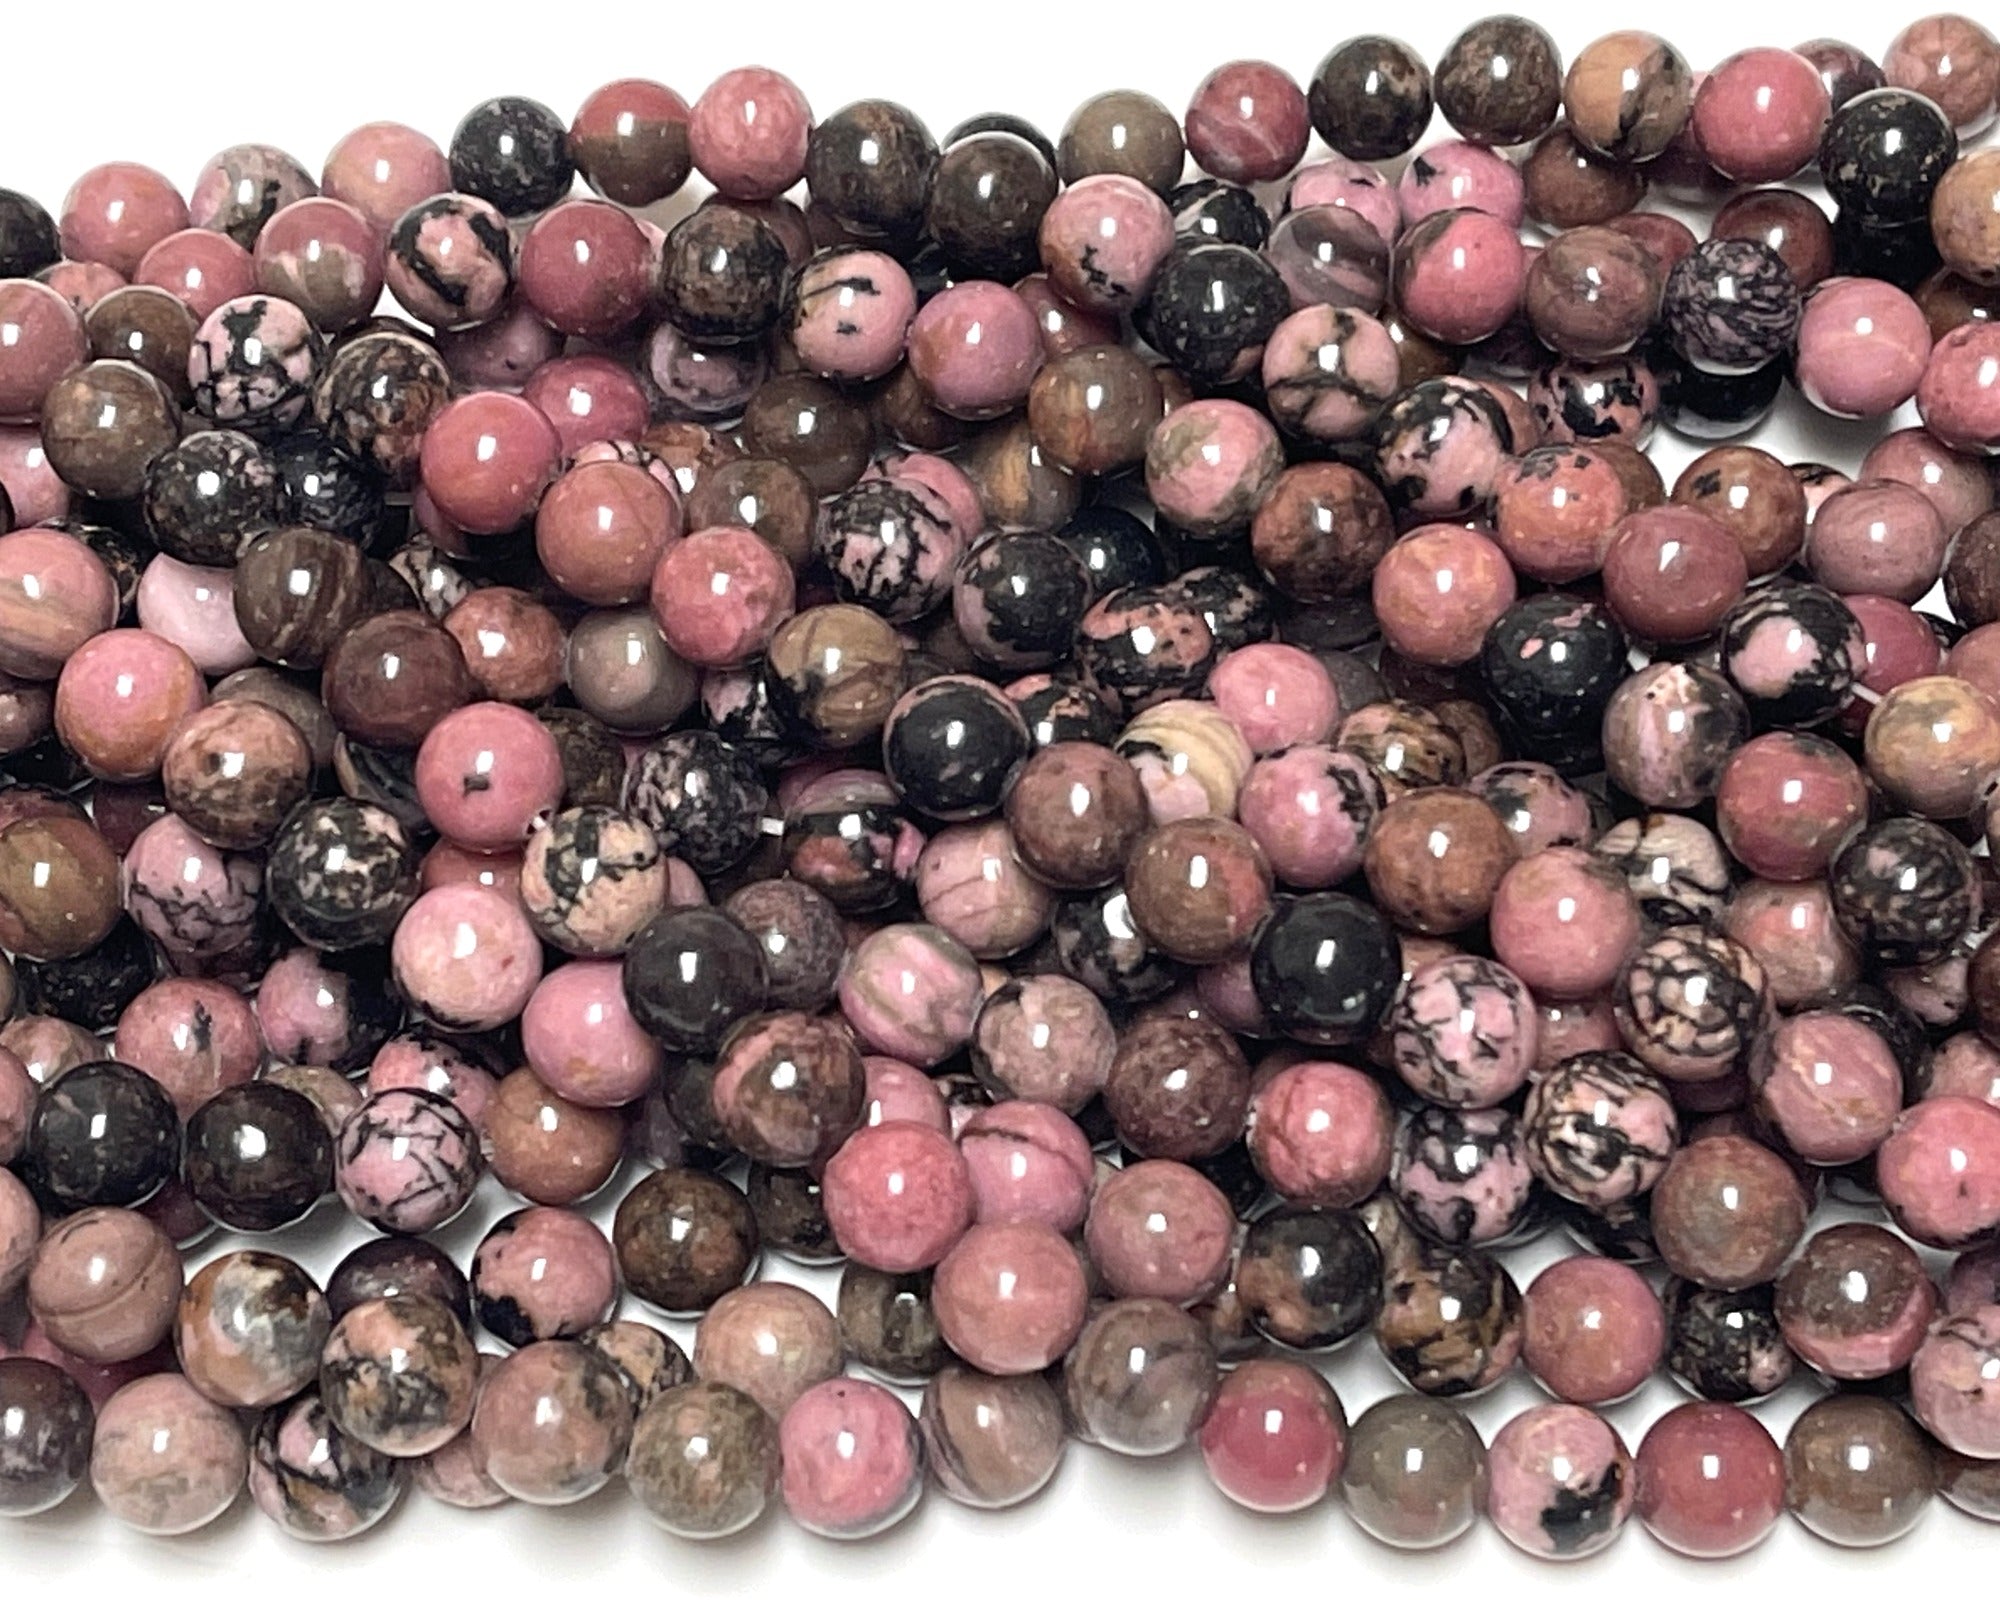 Black Veined Rhodonite 8mm round ball beads 15" strand - Oz Beads 